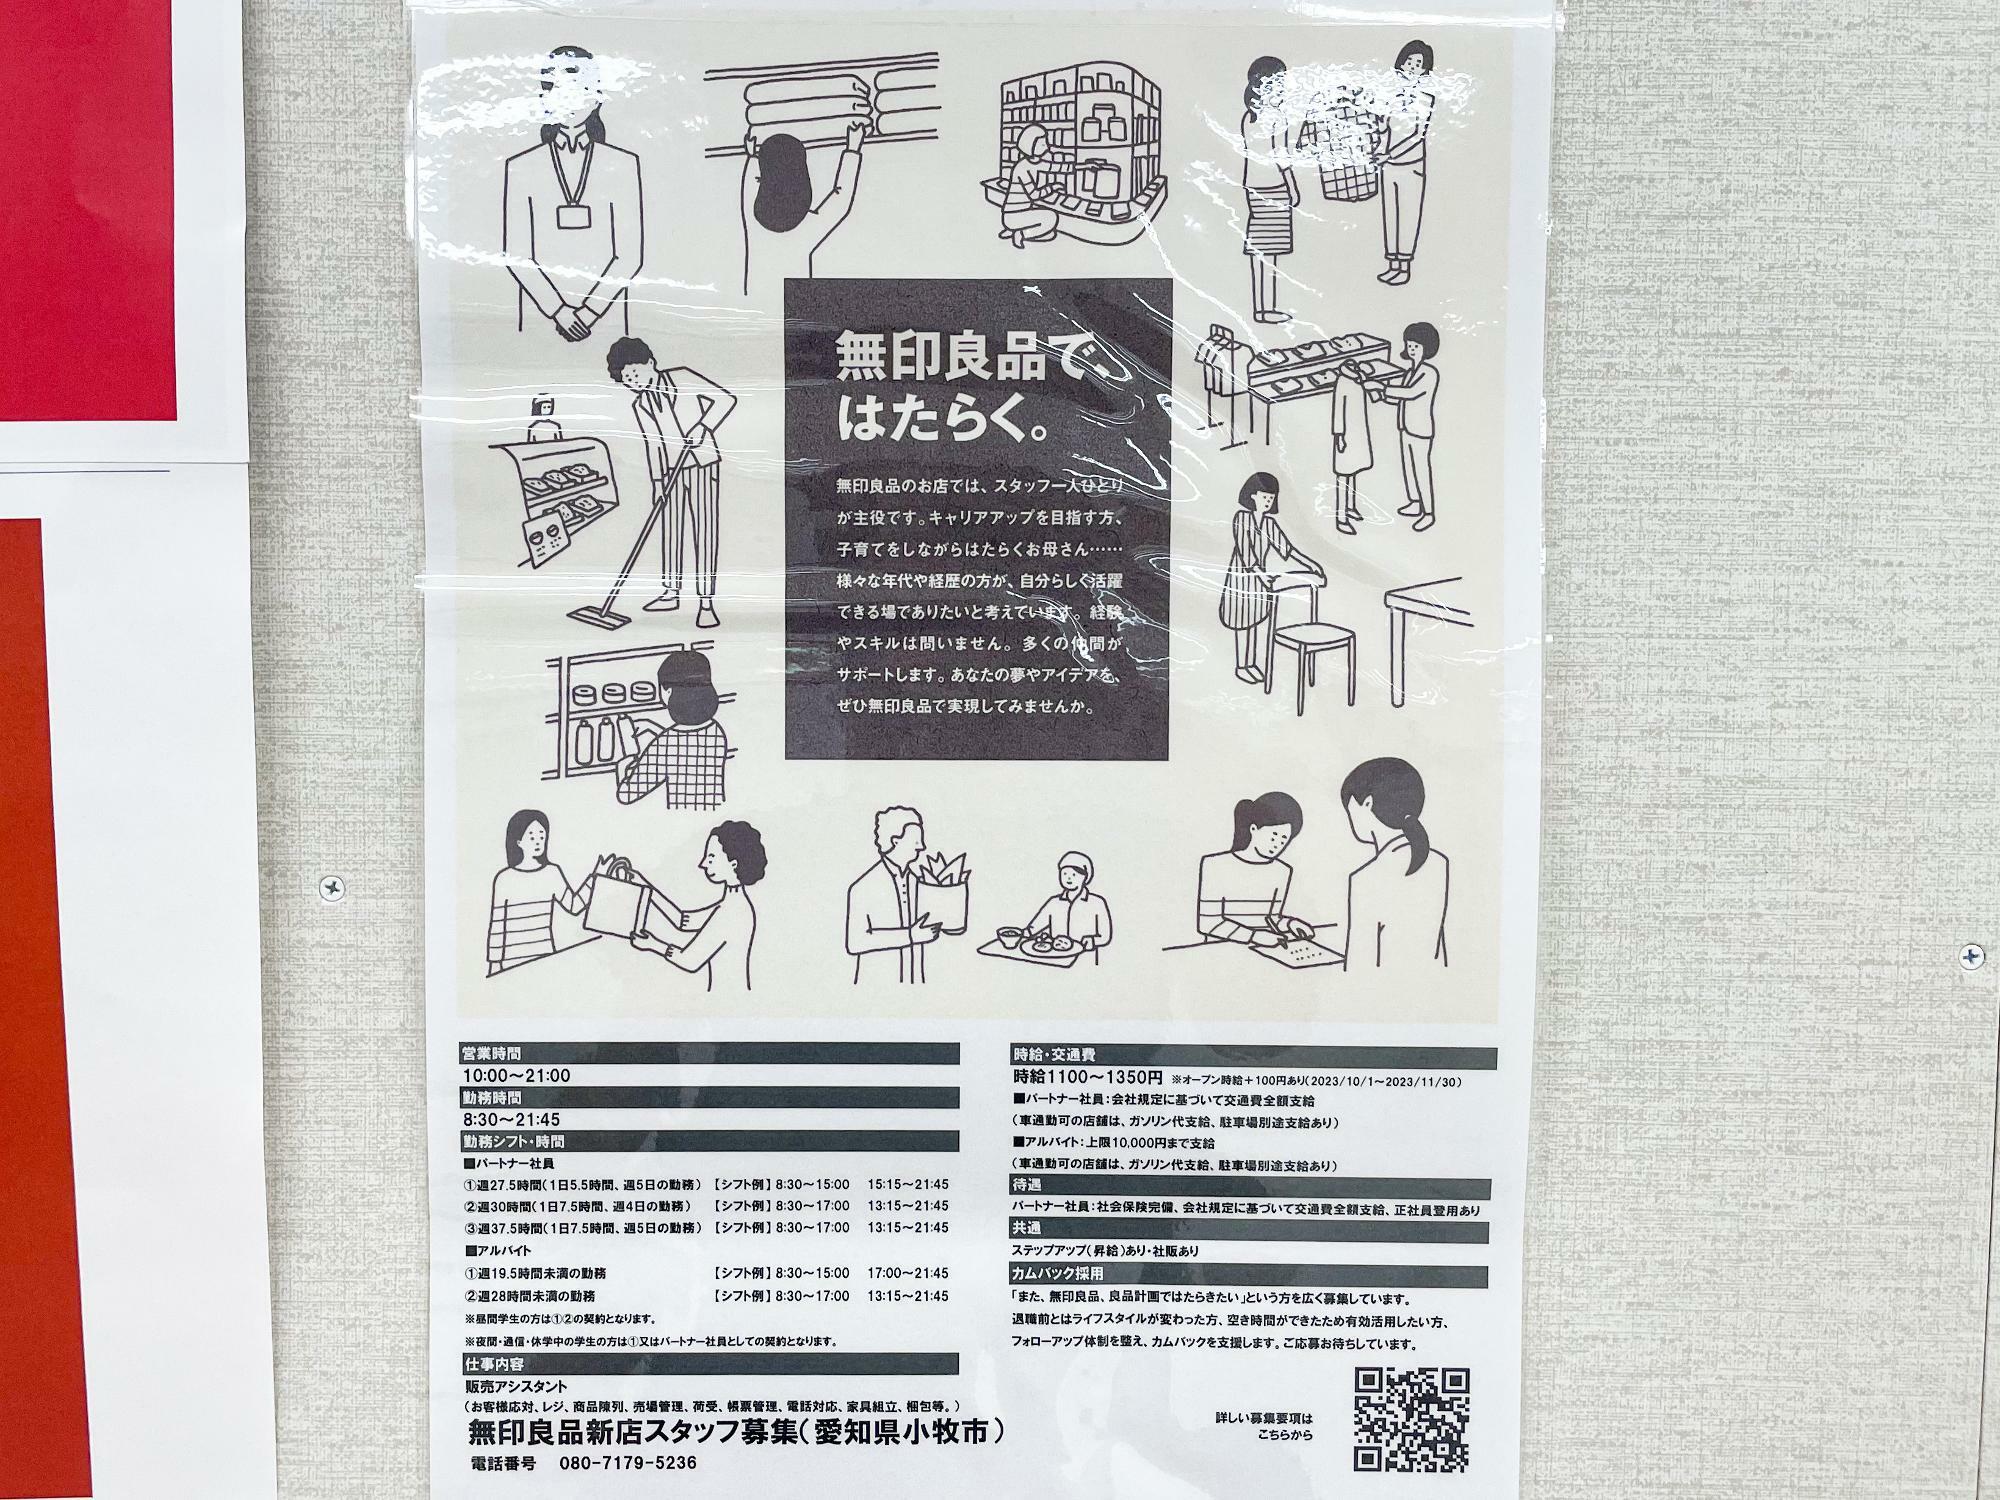 無印良品イオン小牧店 11月3日オープン予定